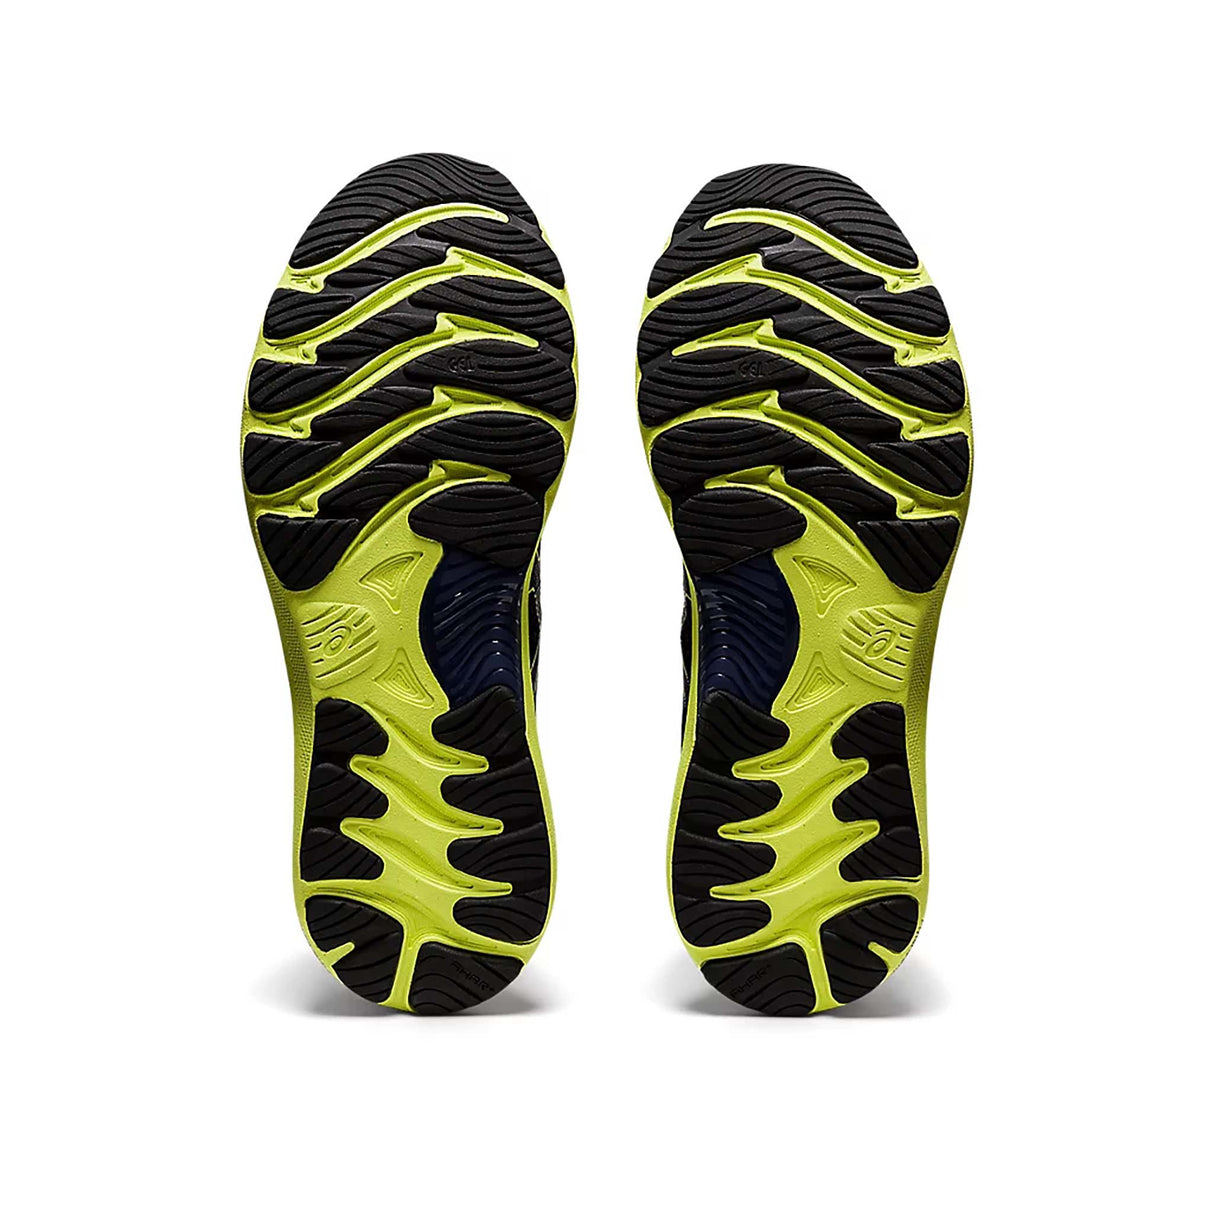 ASICS Gel Nimbus 23 chaussures de course à pied thunder blue glow yellow homme semelle